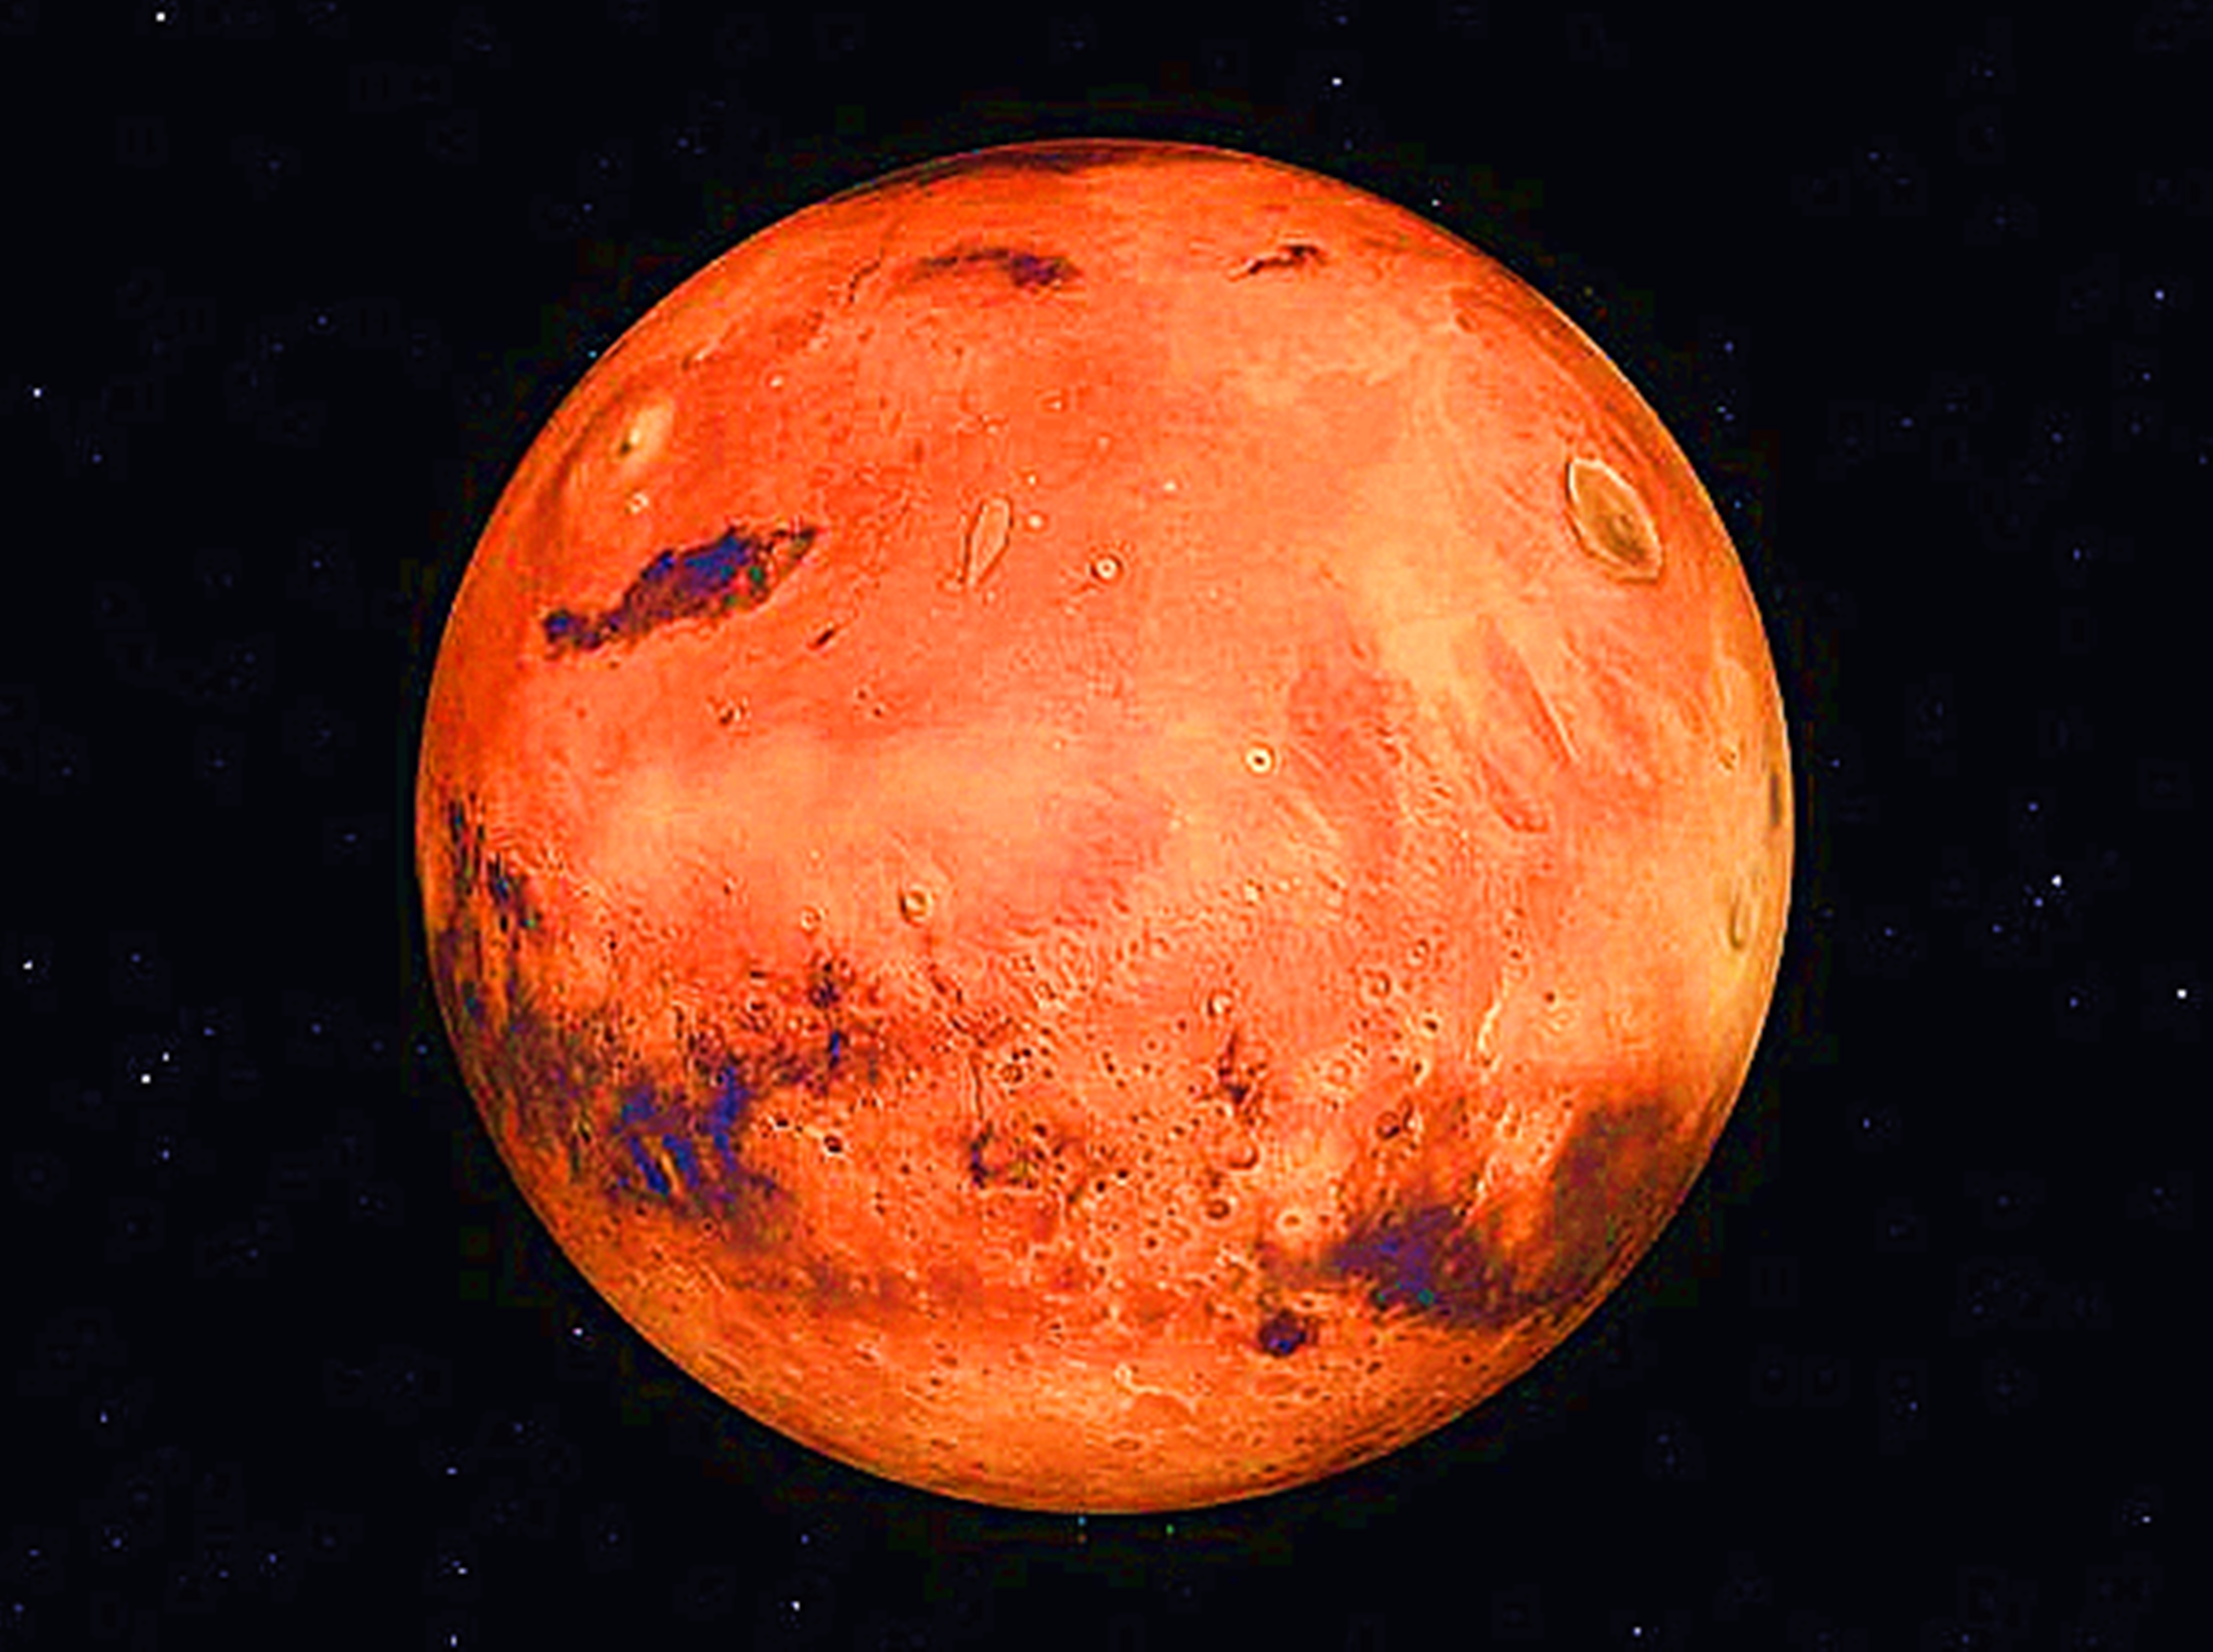 火星上外星人生命的痕迹超清晰写照很明显这才是真正的火星文